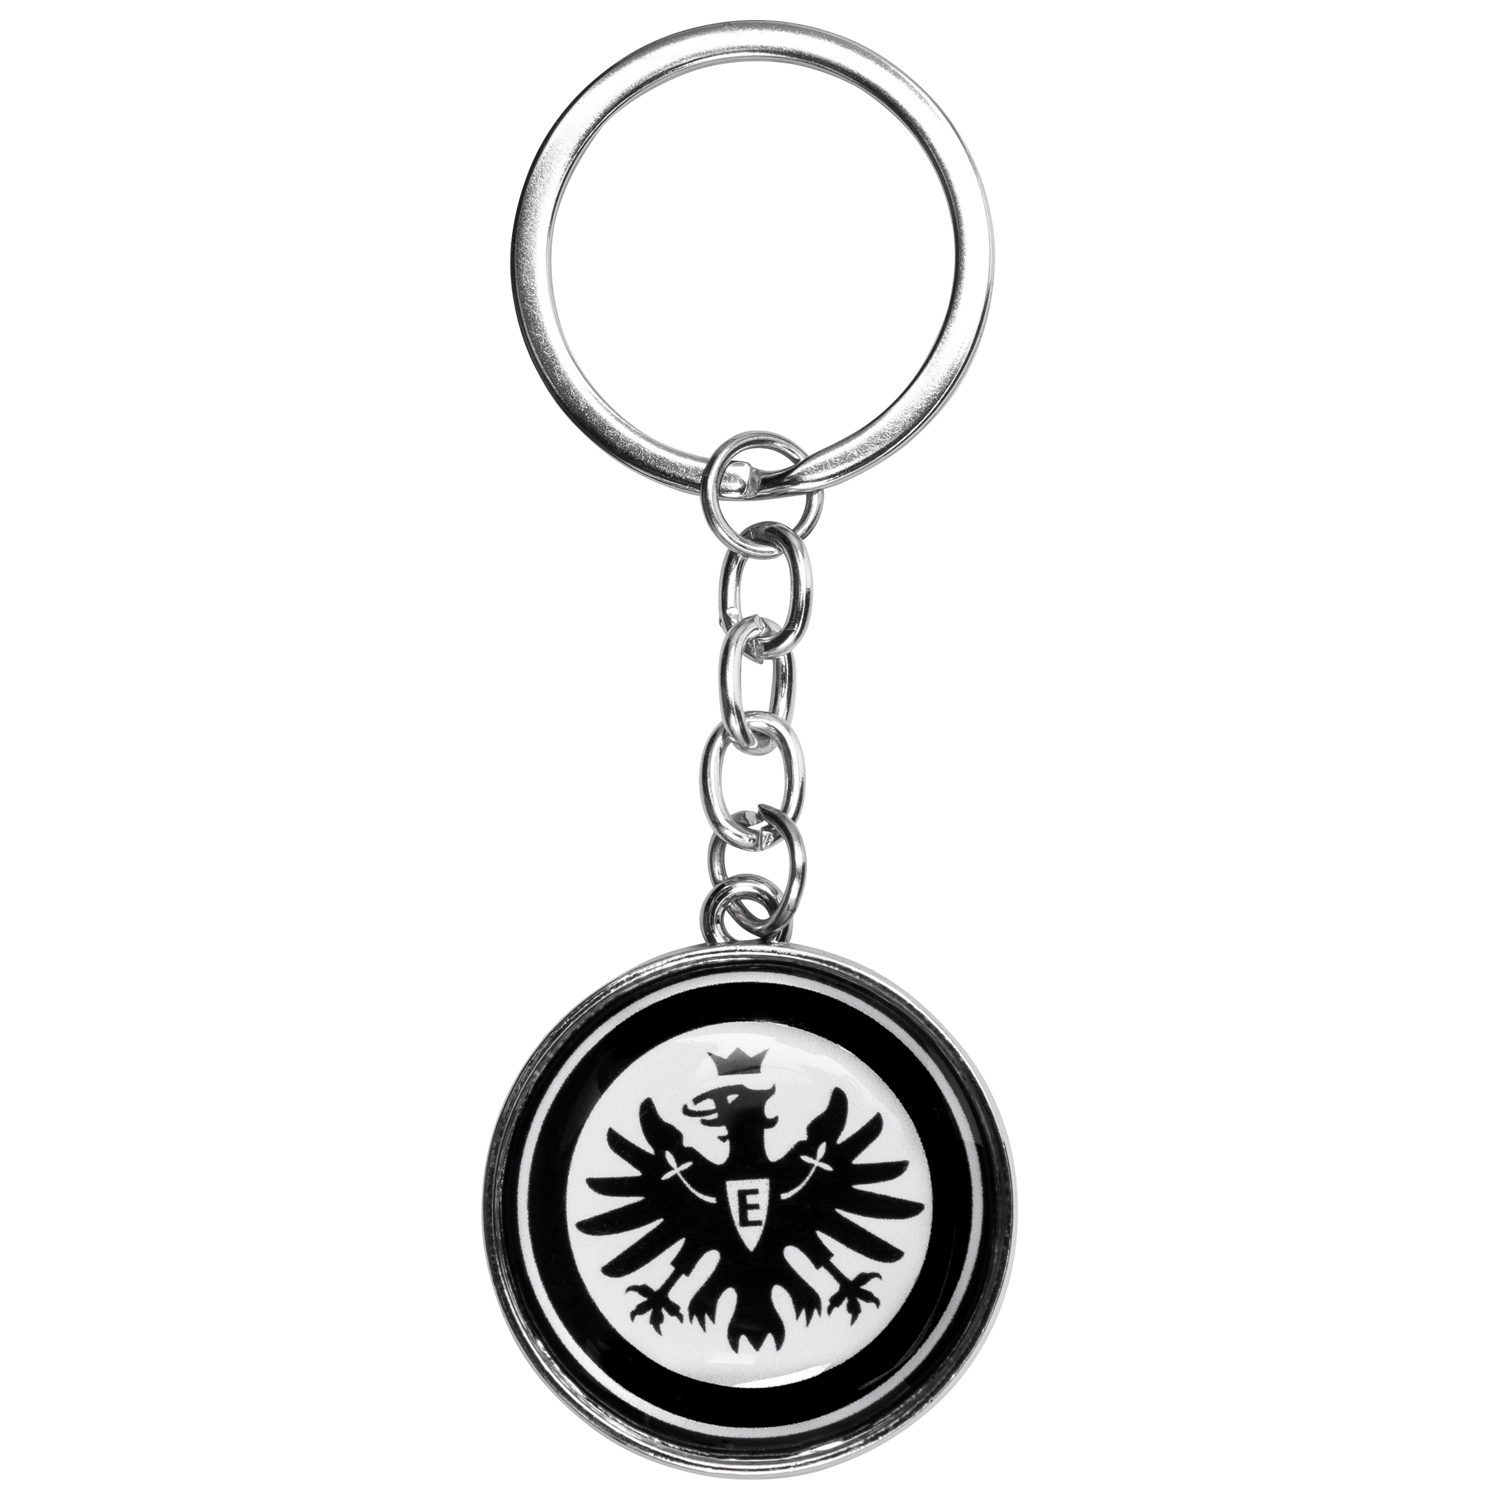 Badgeholder Lanyard Eintracht Frankfurt Schlüsselband  schwarz Logo Keyholder 